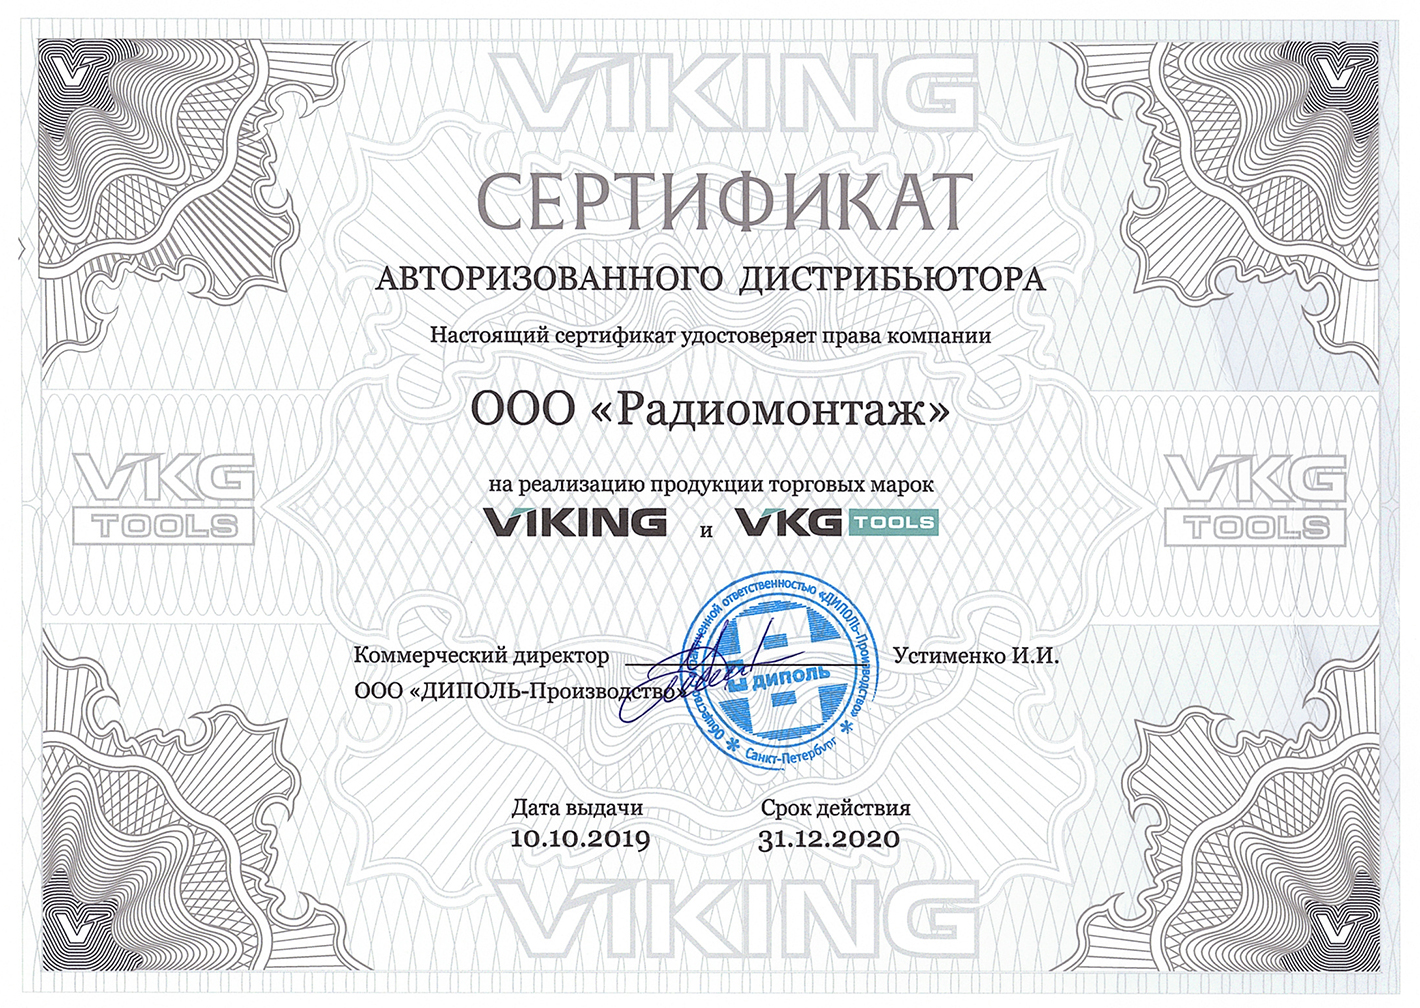 Сертификат авторизованного дистрибьютера VIKING и VKG TOOLS 2020 год.